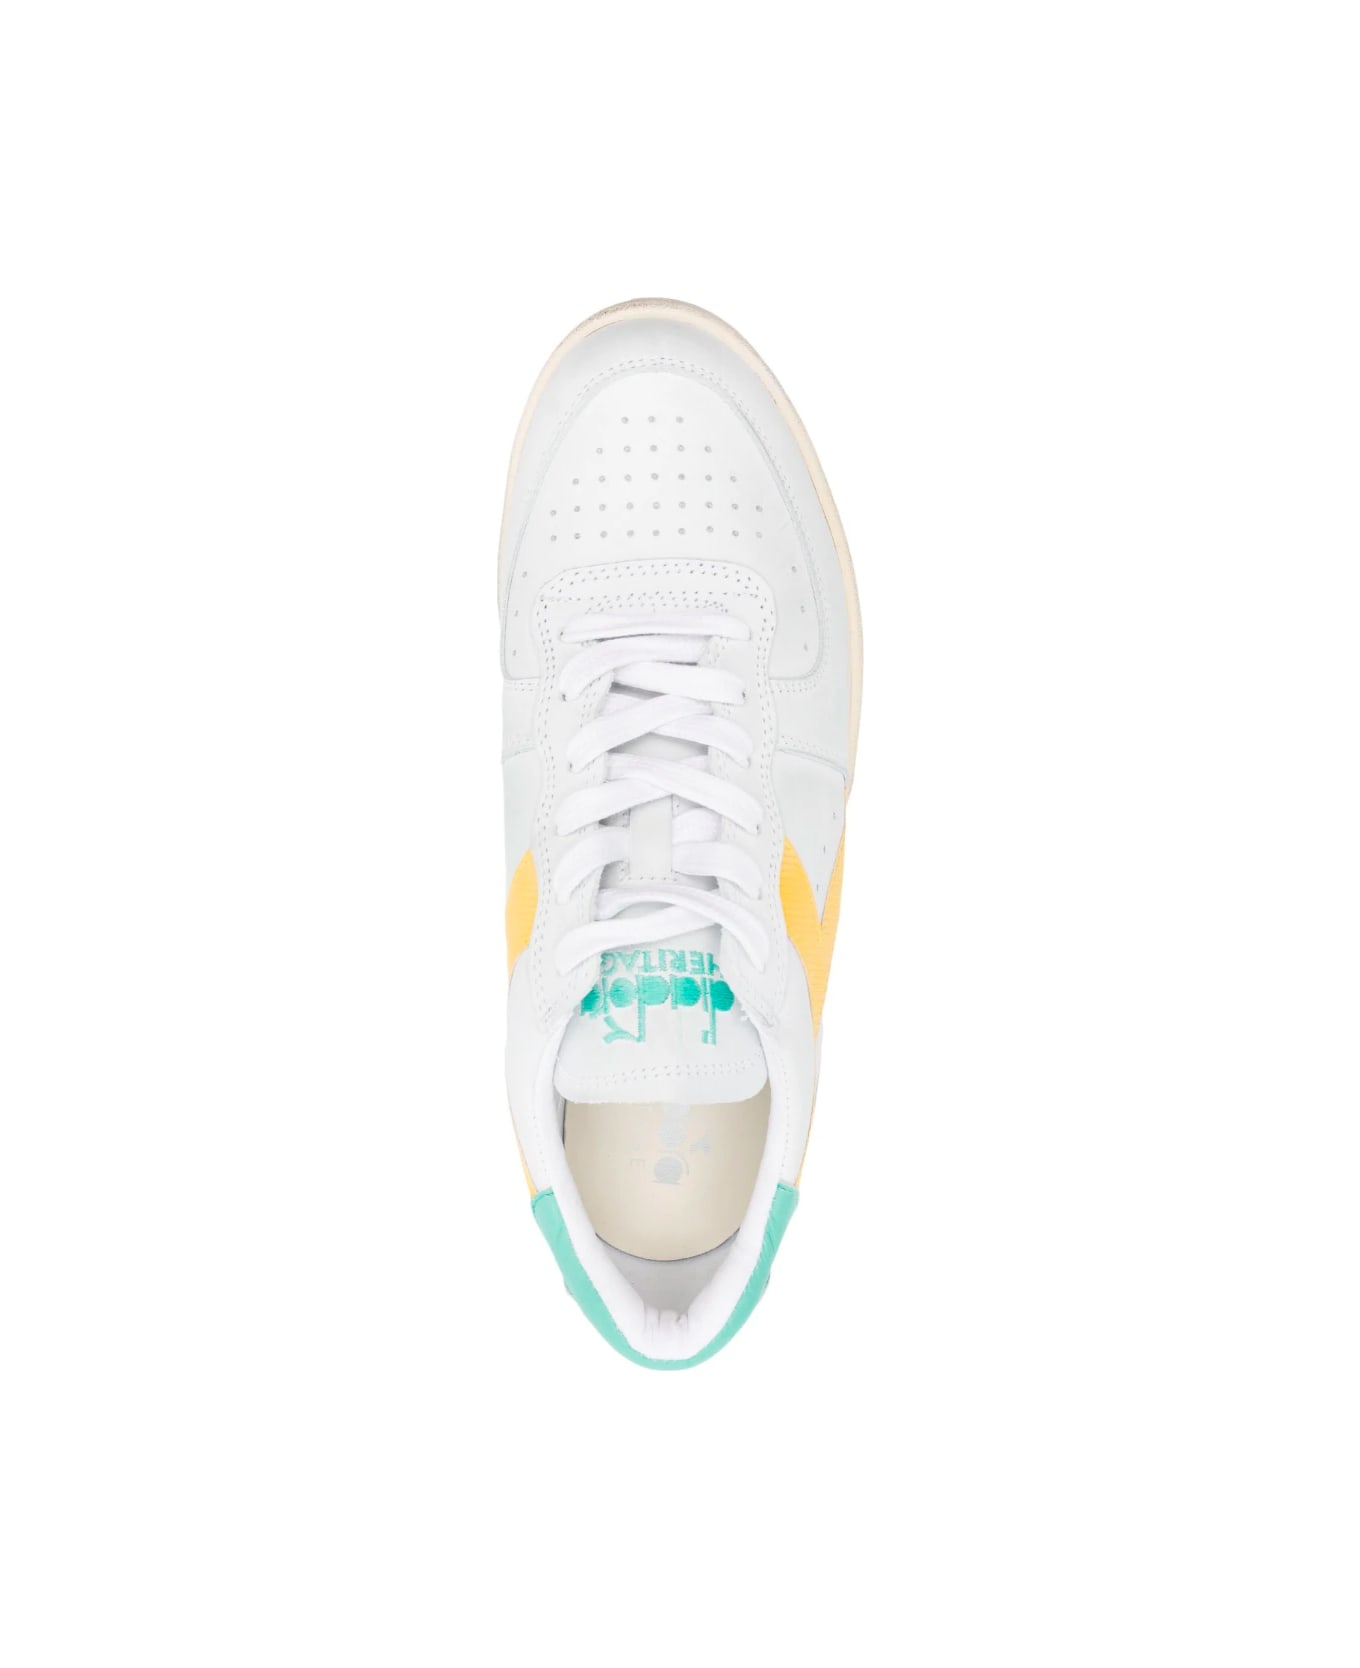 Diadora Mi Basket Low Used Sneaker - White Empire Yellow